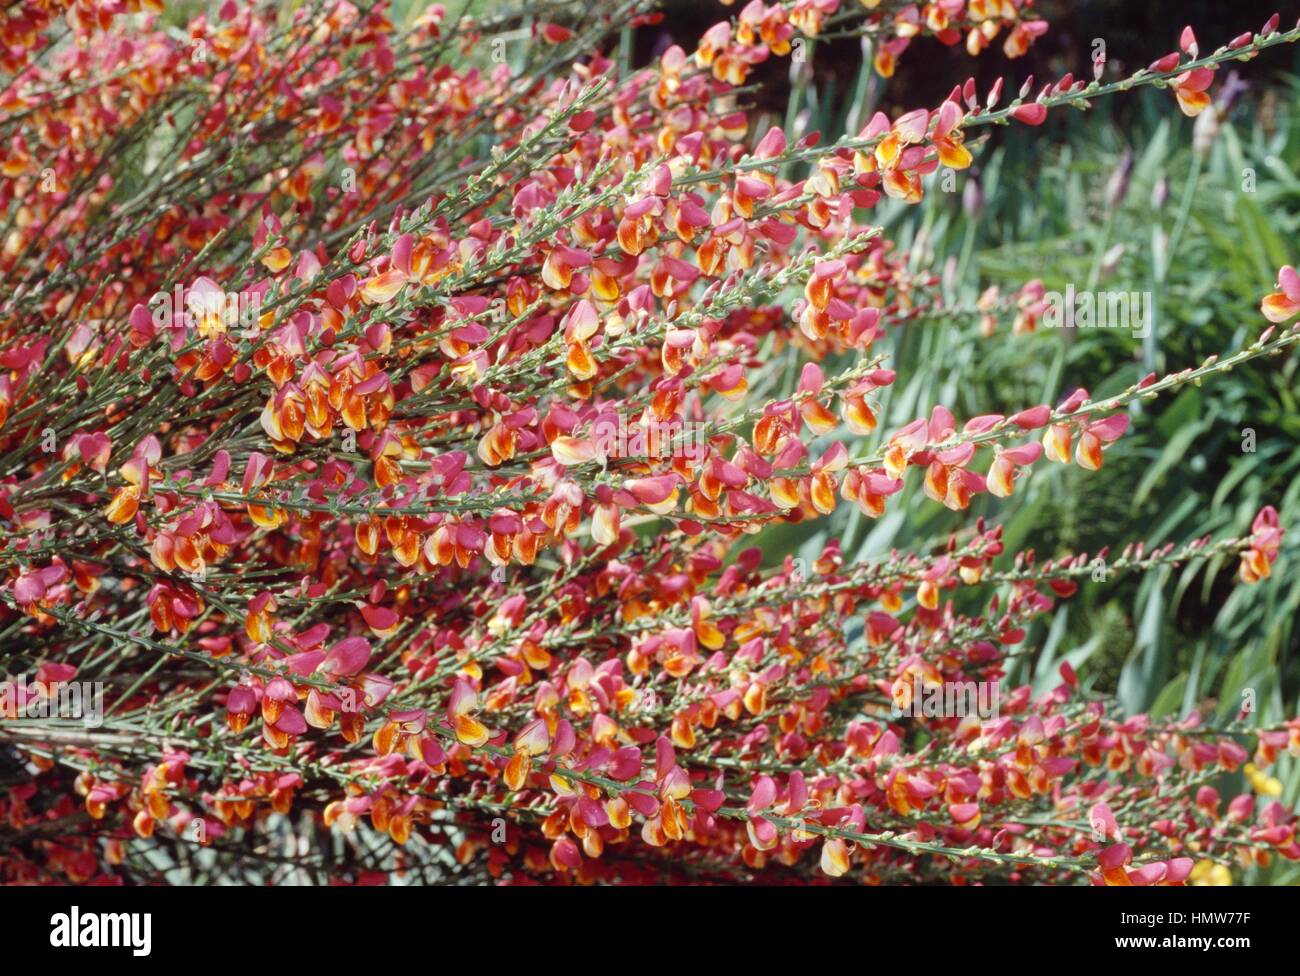 Broom (Cytisus scoparius Goldfine), Fabaceae. Stock Photo